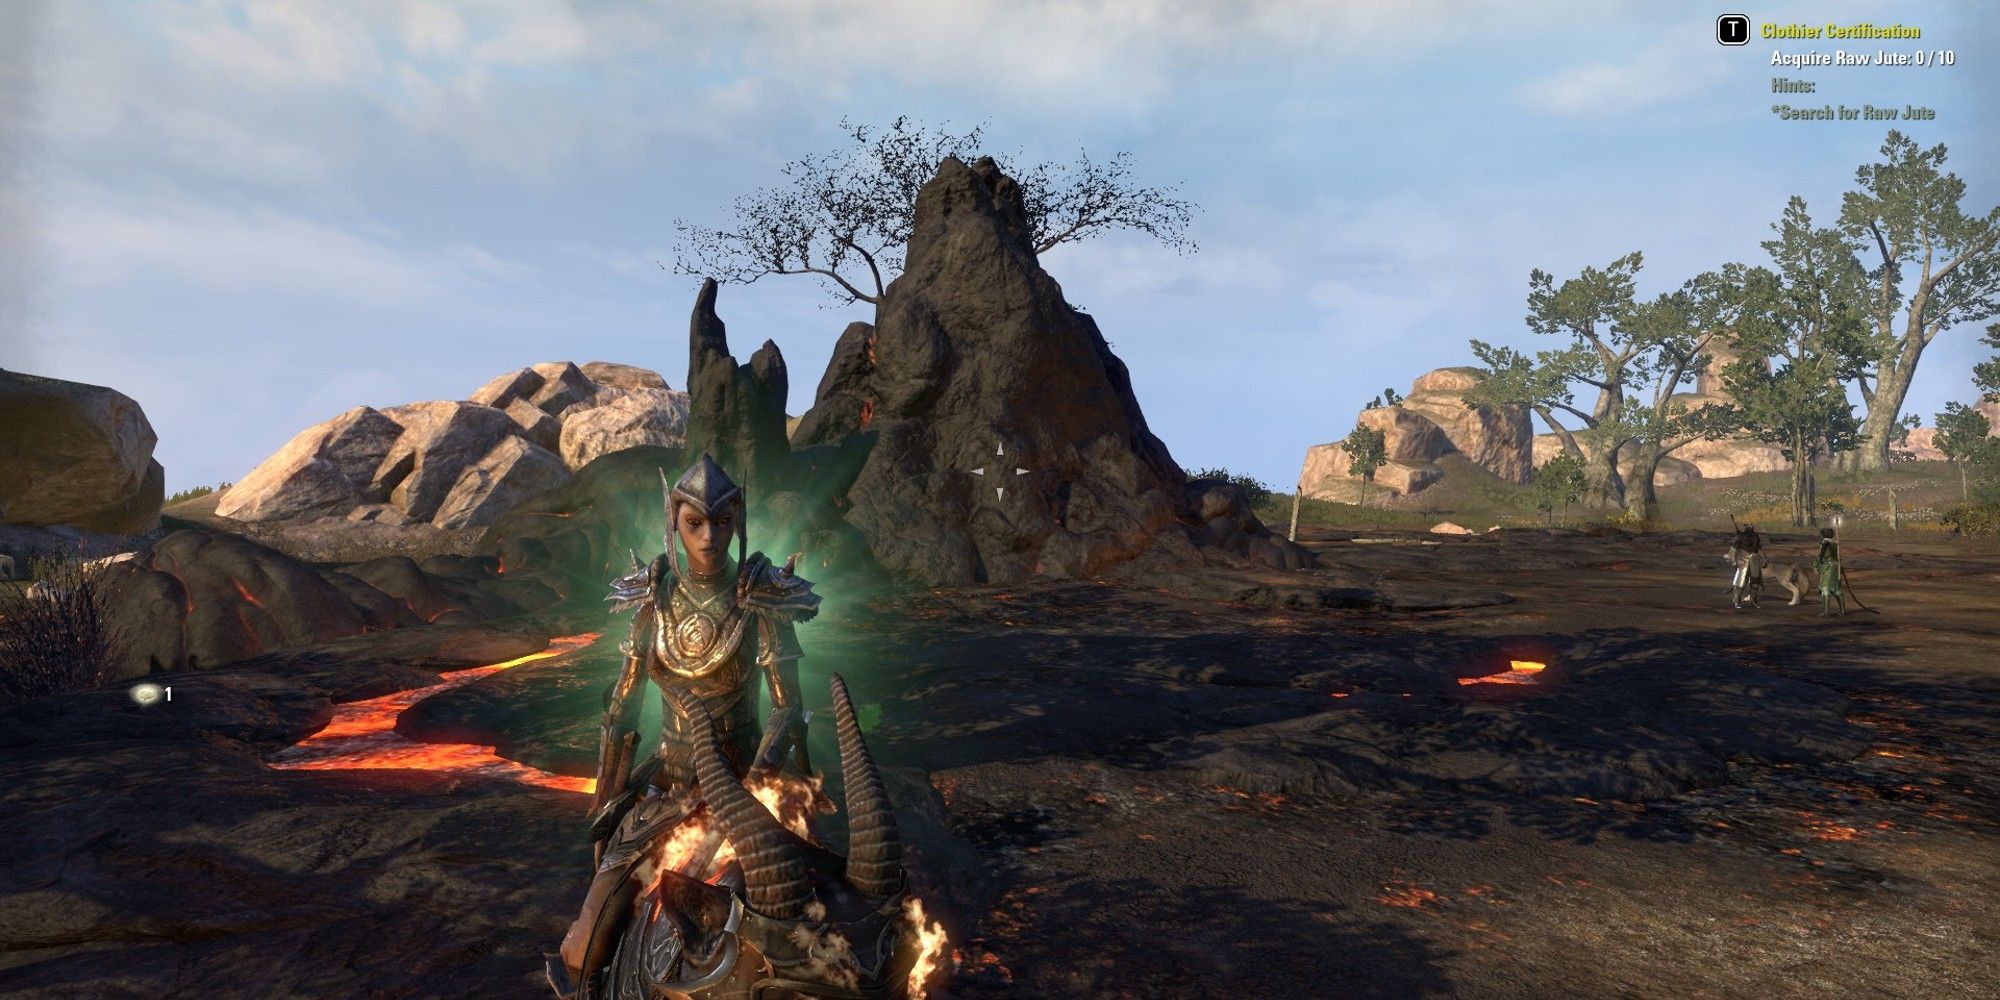 An inactive Volcanic Vent in the Elder Scrolls Online